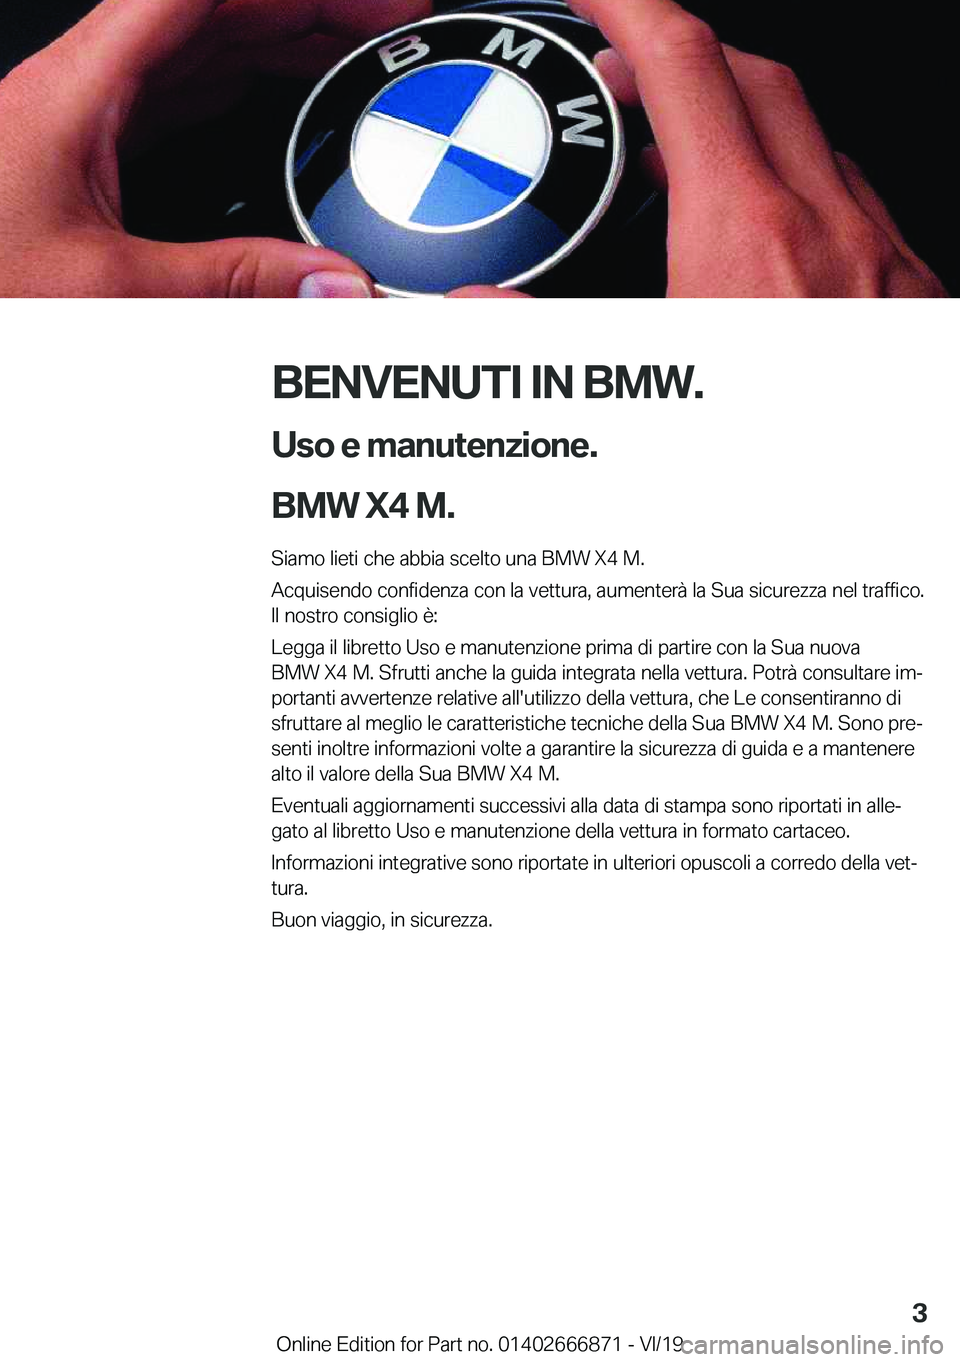 BMW X4 M 2020  Libretti Di Uso E manutenzione (in Italian) �B�E�N�V�E�N�U�T�I��I�N��B�M�W�.�U�s�o��e��m�a�n�u�t�e�n�z�i�o�n�e�.
�B�M�W��X�4��M�.
�S�i�a�m�o��l�i�e�t�i��c�h�e��a�b�b�i�a��s�c�e�l�t�o��u�n�a��B�M�W��X�4��M�.
�A�c�q�u�i�s�e�n�d�o��